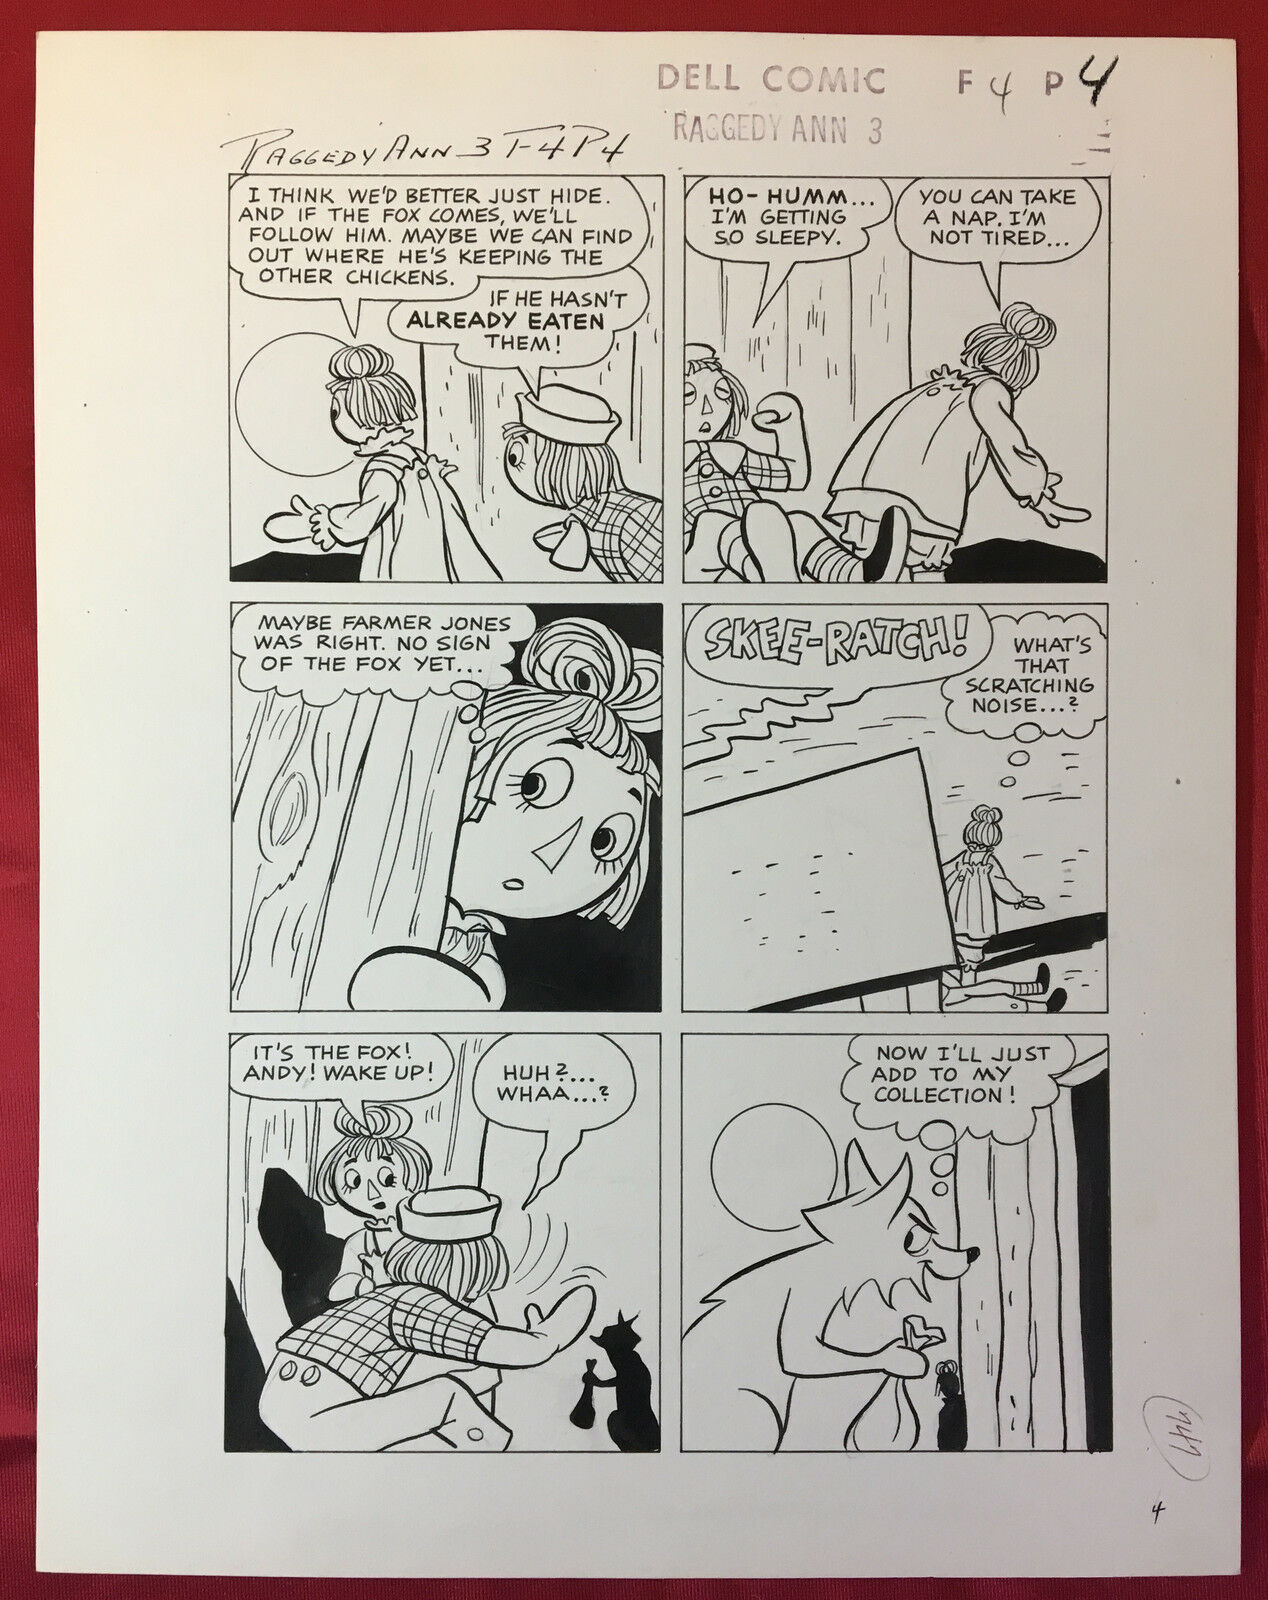 1965 Original Dell Comic Book Art RAGGEDY ANN #3 ~ page 4